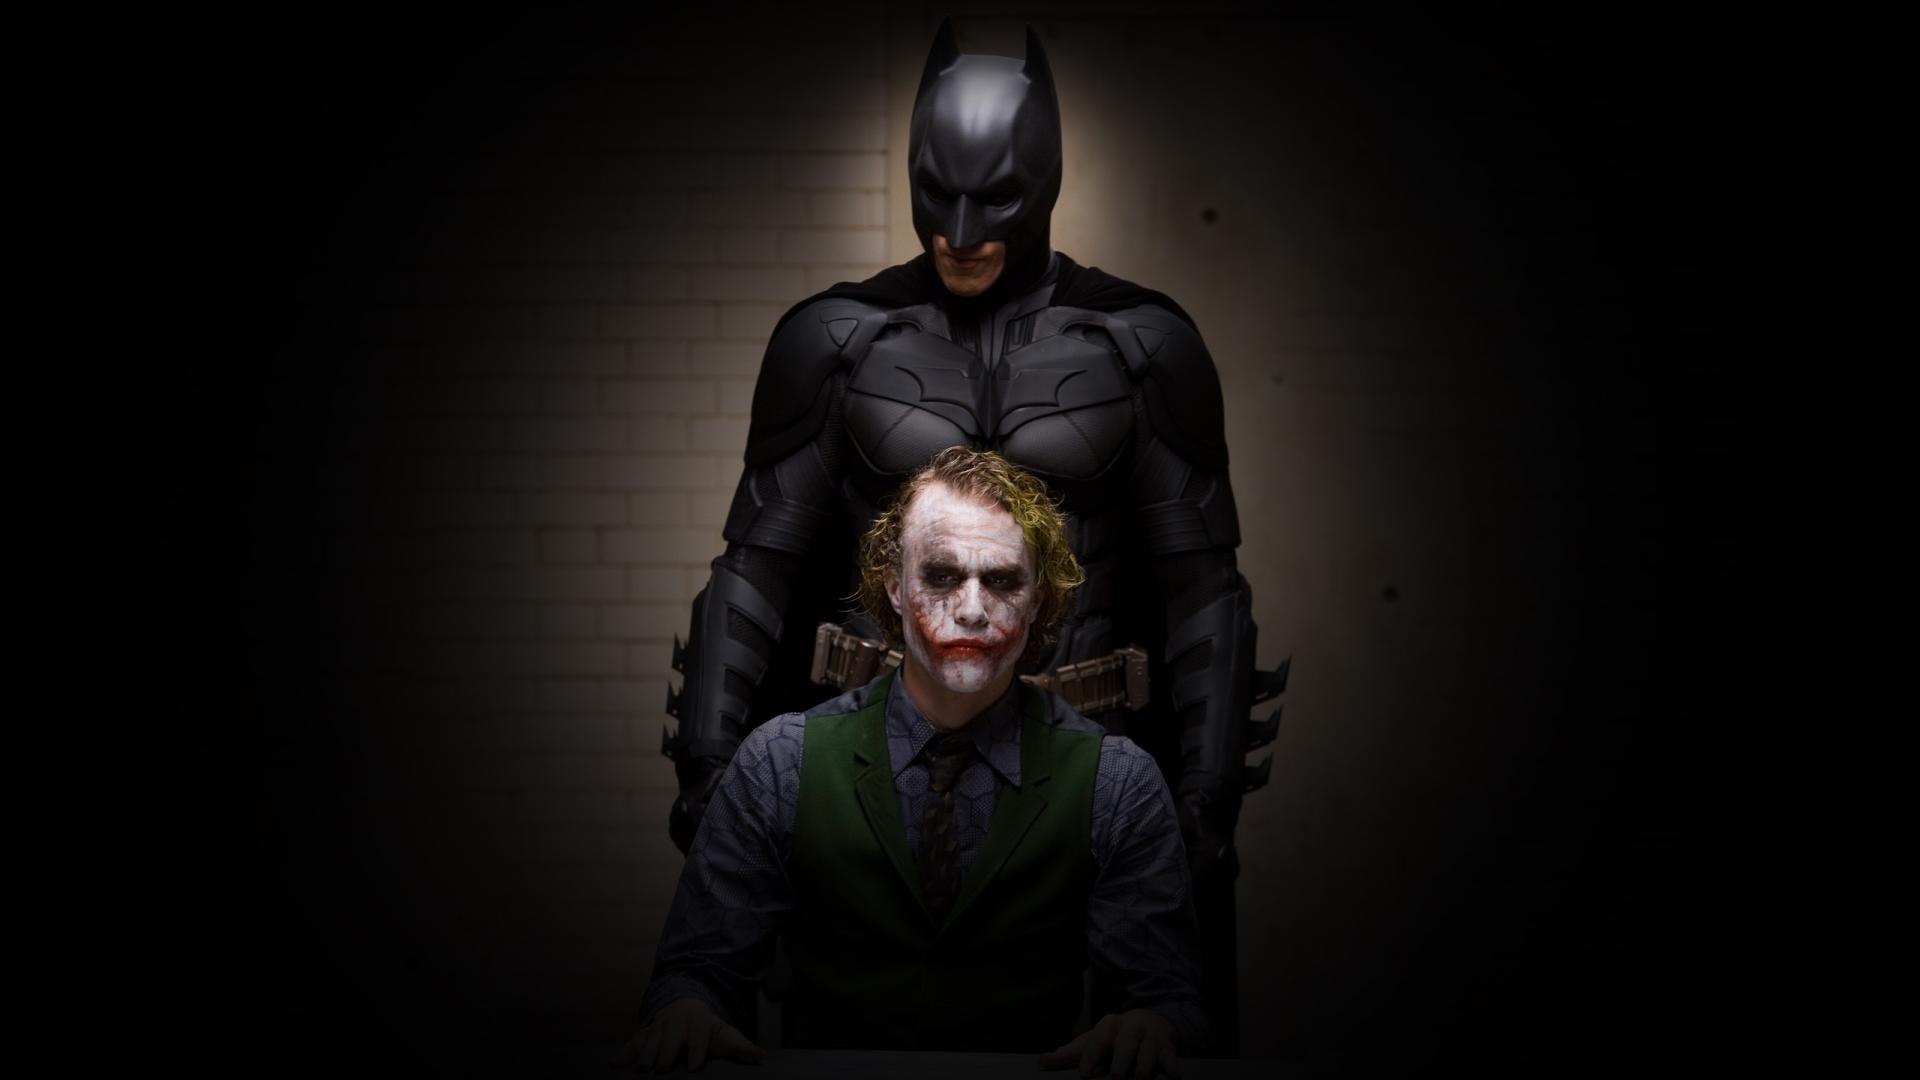 Batman Dark Knight Joker HD Wallpaper of Movie   hdwallpaper2013com